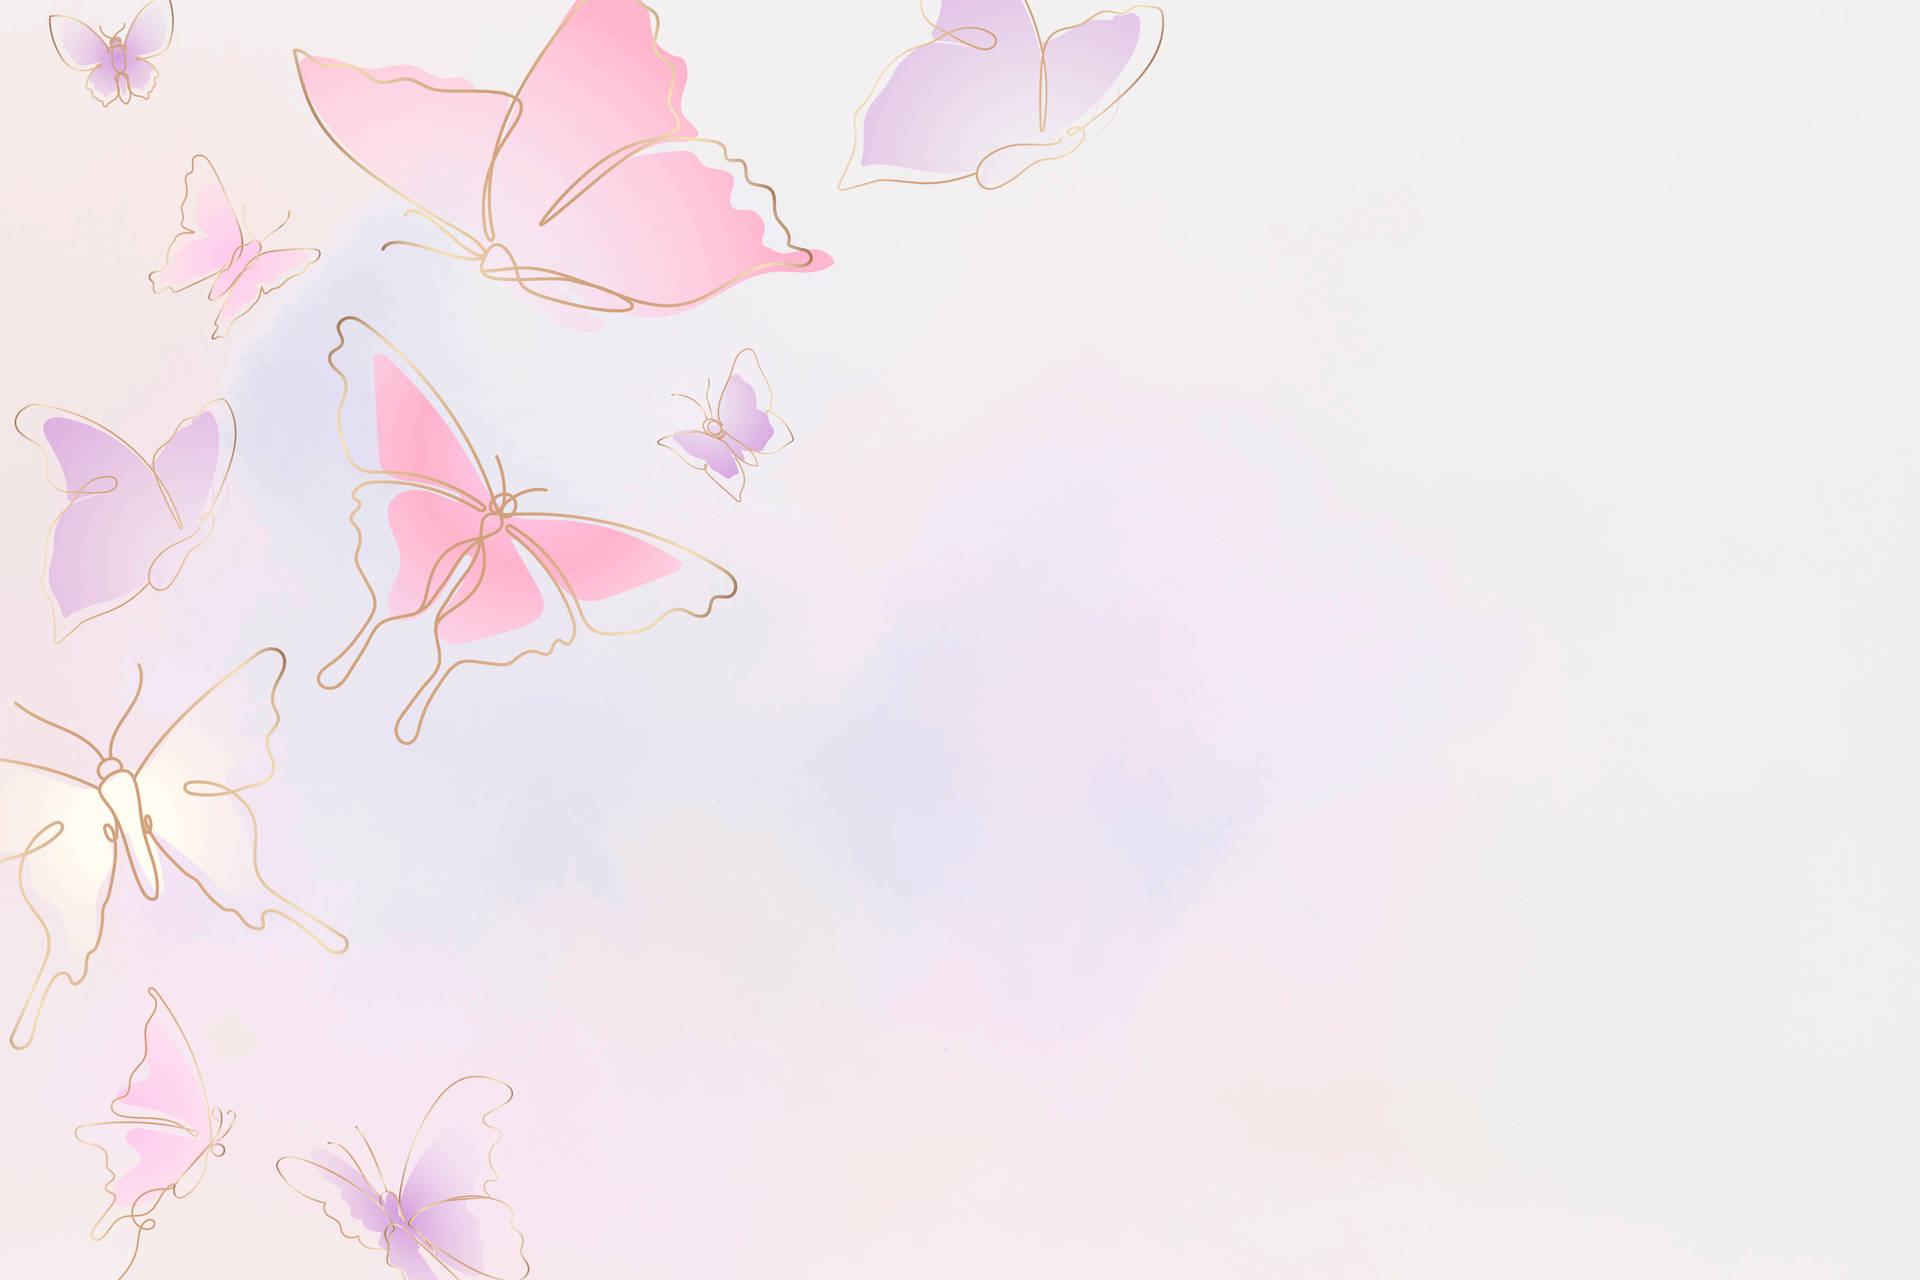 Aesthetic Butterfly Desktop Wallpapers